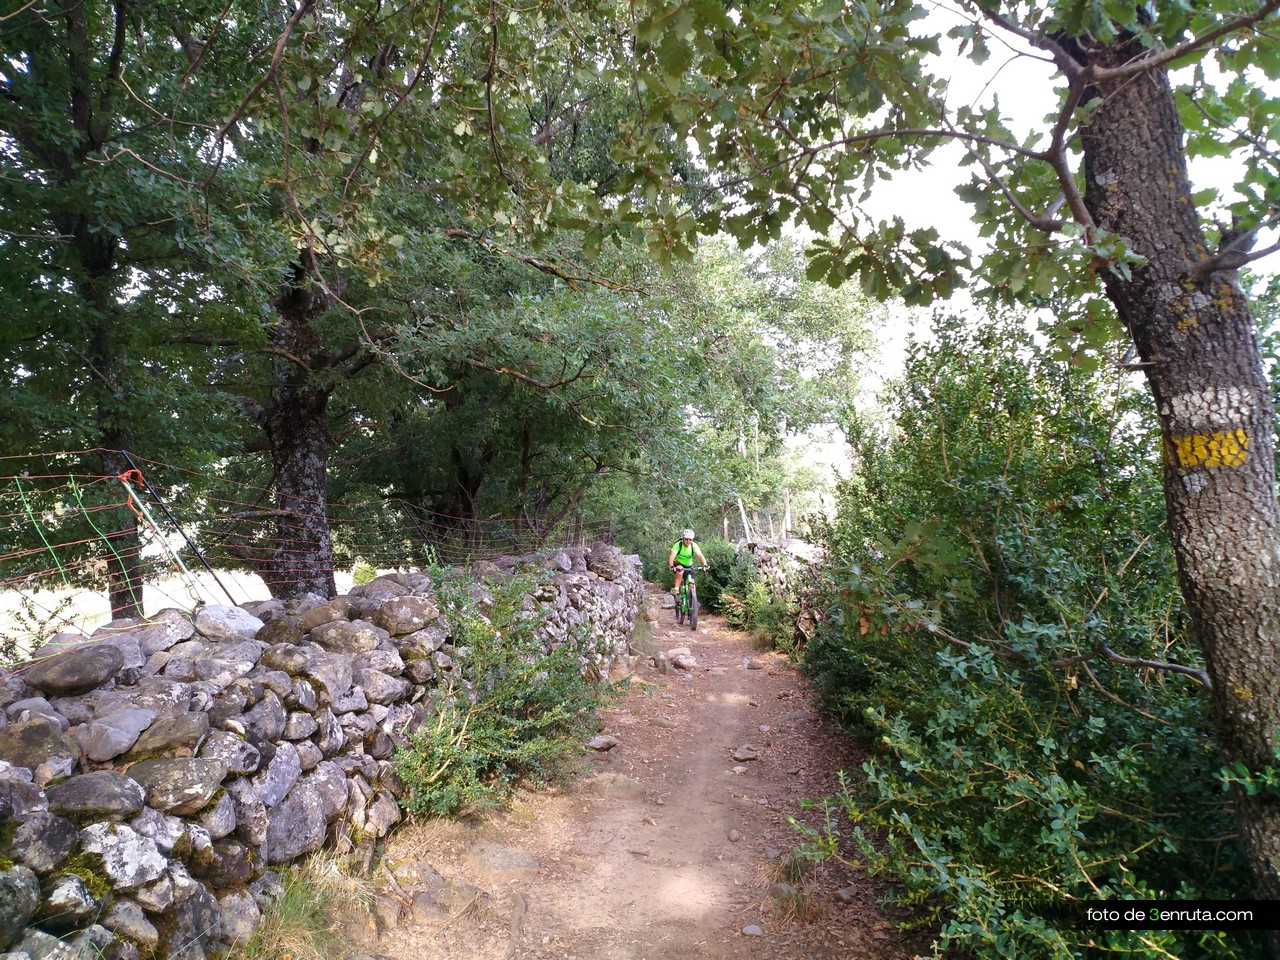 La vía pecuaria nos lleva entre muros de piedra hasta Los Molinos